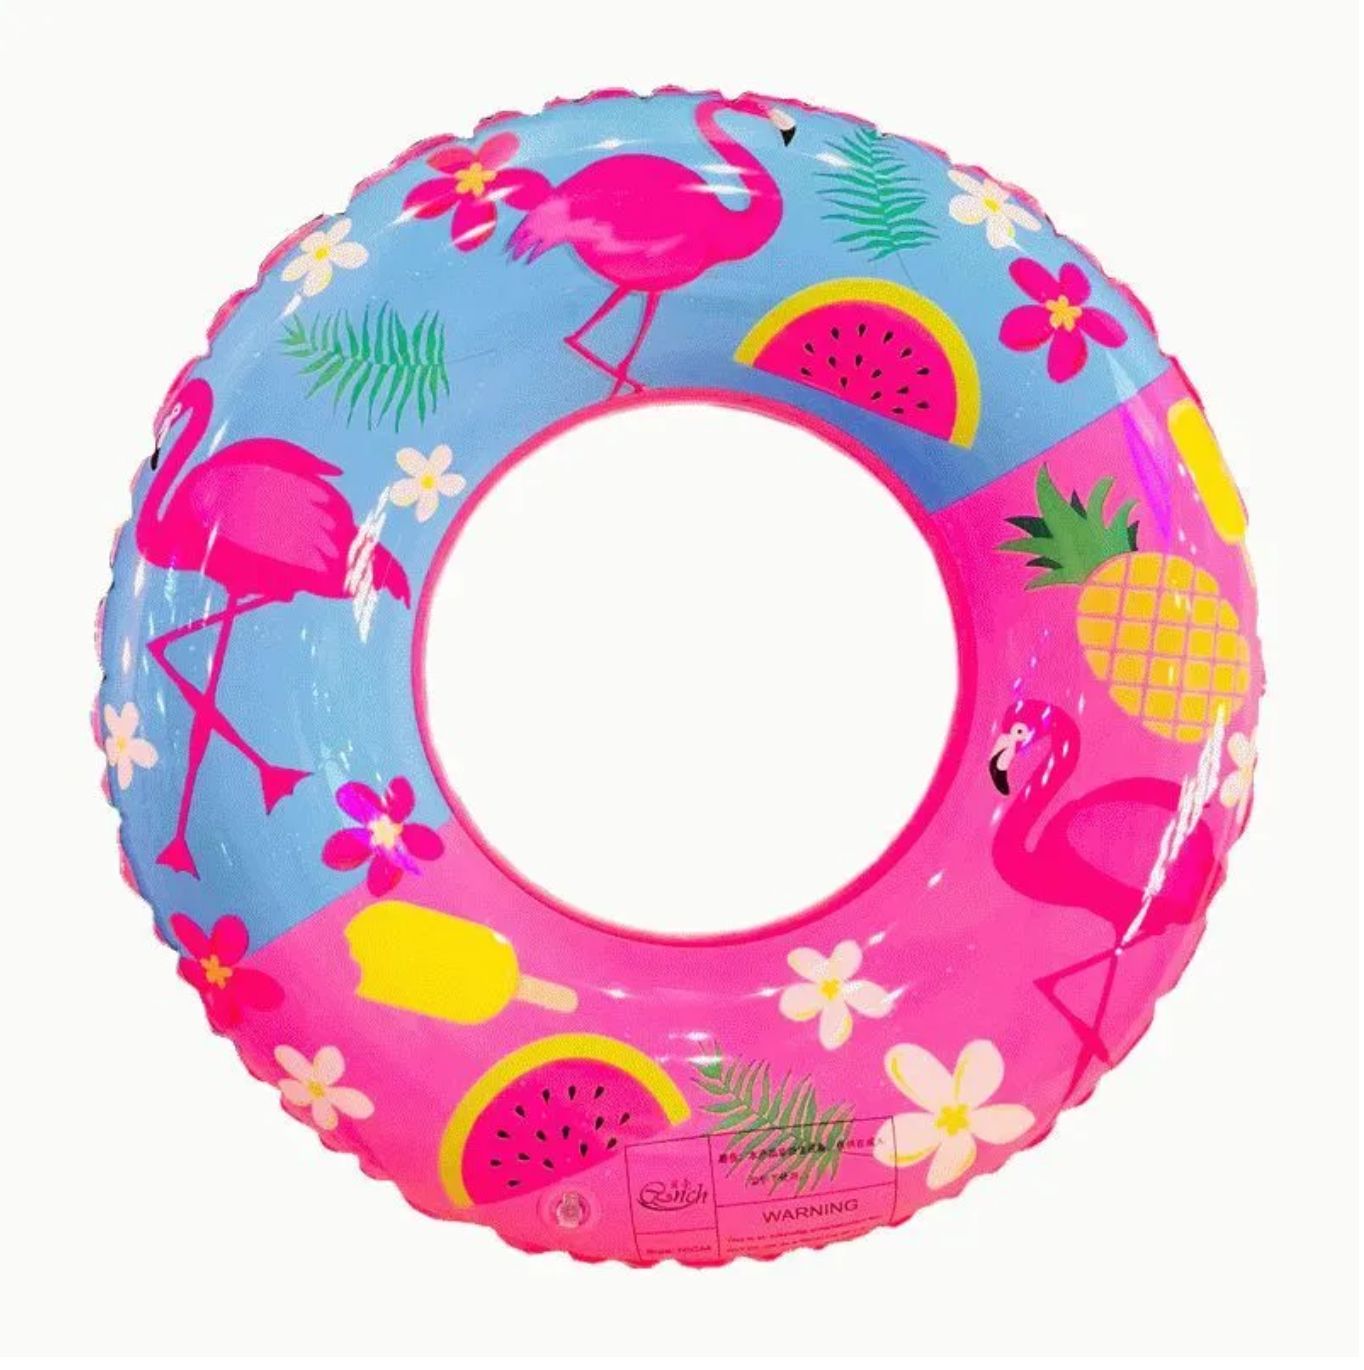 Купить круг в новосибирске. Надувной круг Swim Ring. Круг для плавания Swim Ring 70см. Flamingo надувной круг Inflatable swimming. Круг для плавания Swim Ring 80см зеленый.